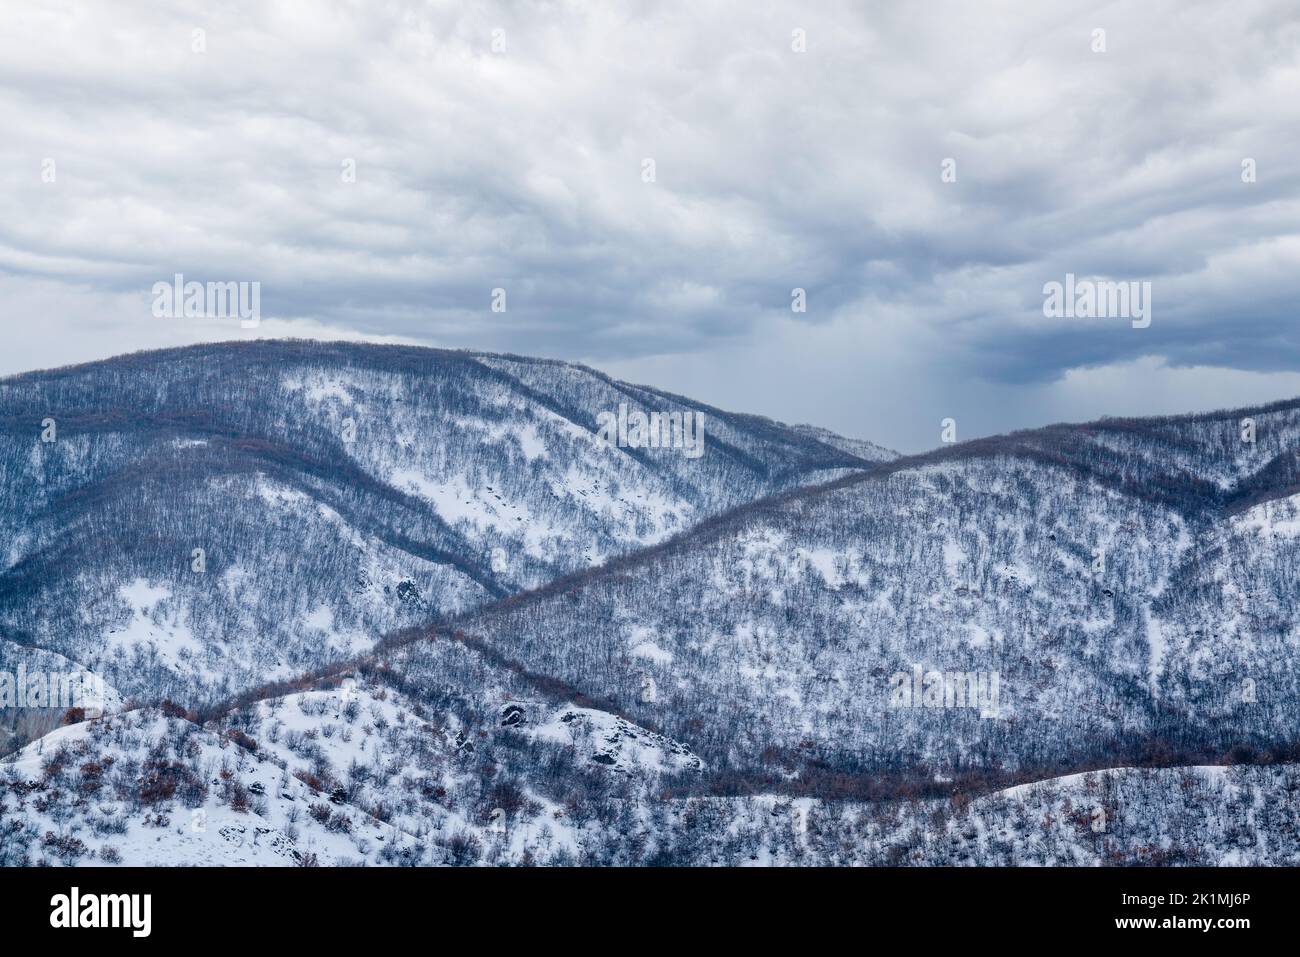 Una vista aérea de los árboles en el bosque y las montañas con nieve cubierta. Fotografía de alta calidad Foto de stock